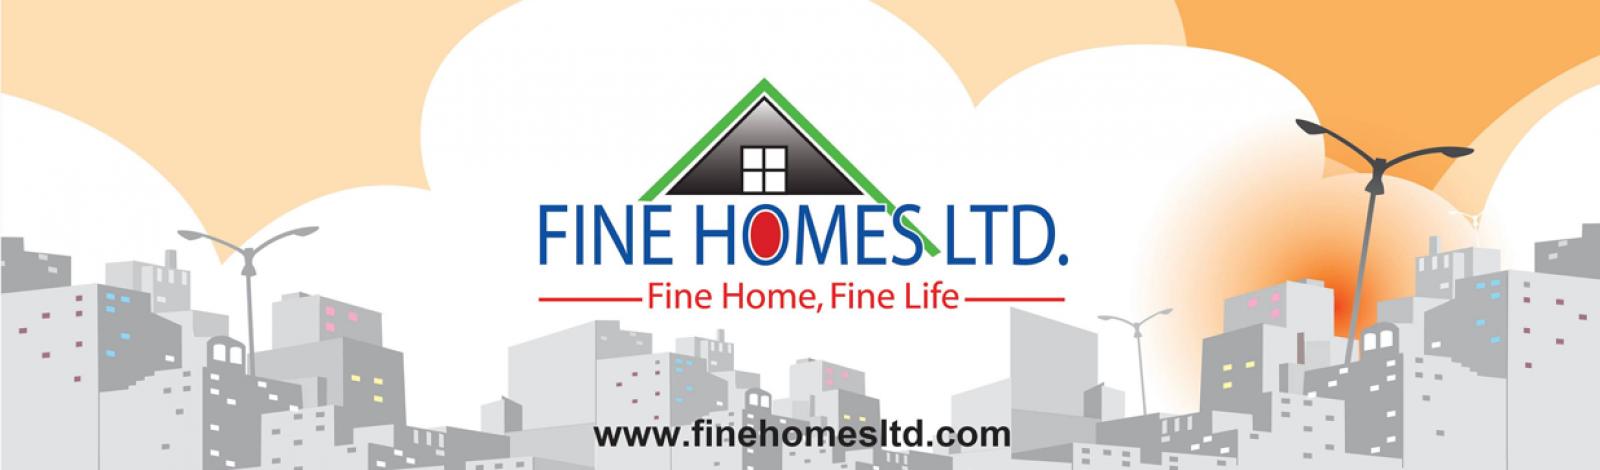 Fine Homes Ltd banner